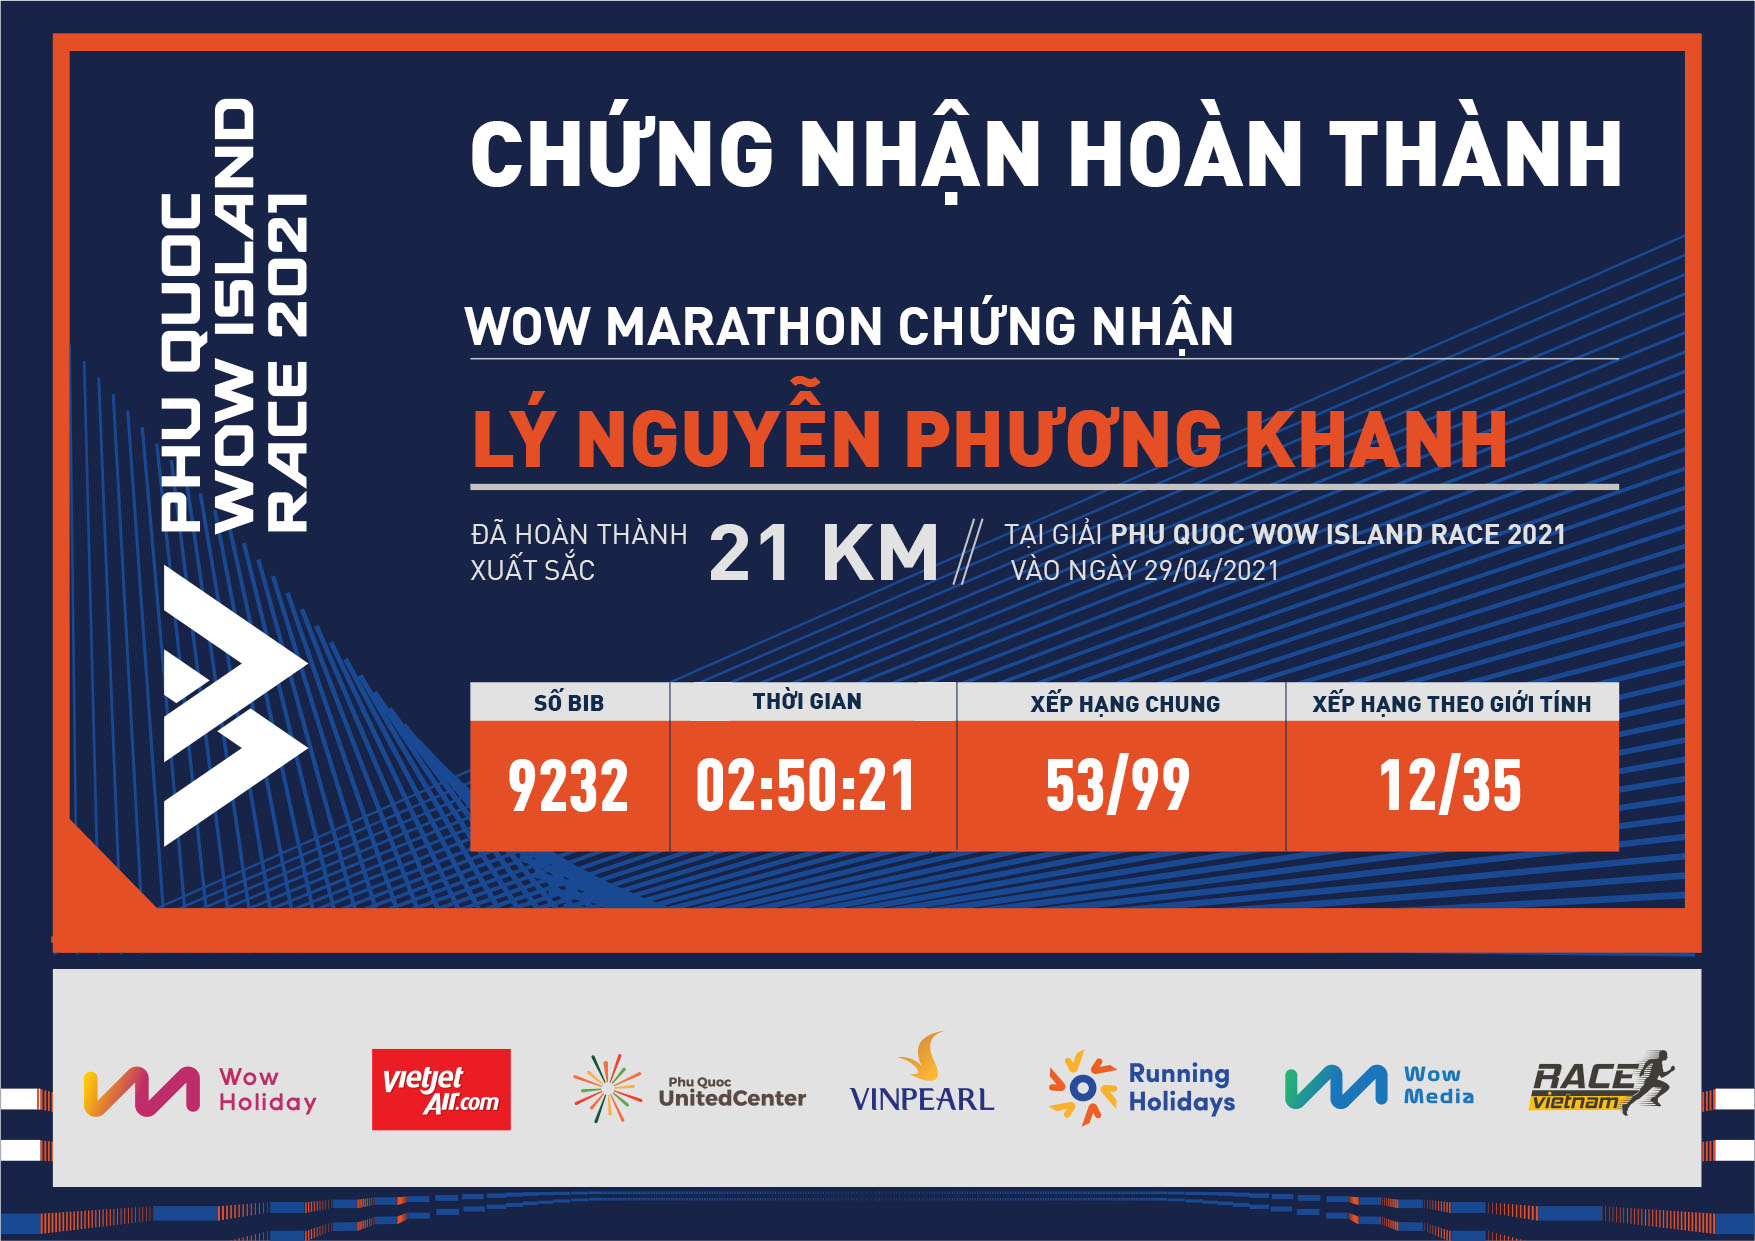 9232 - Lý Nguyễn Phương Khanh